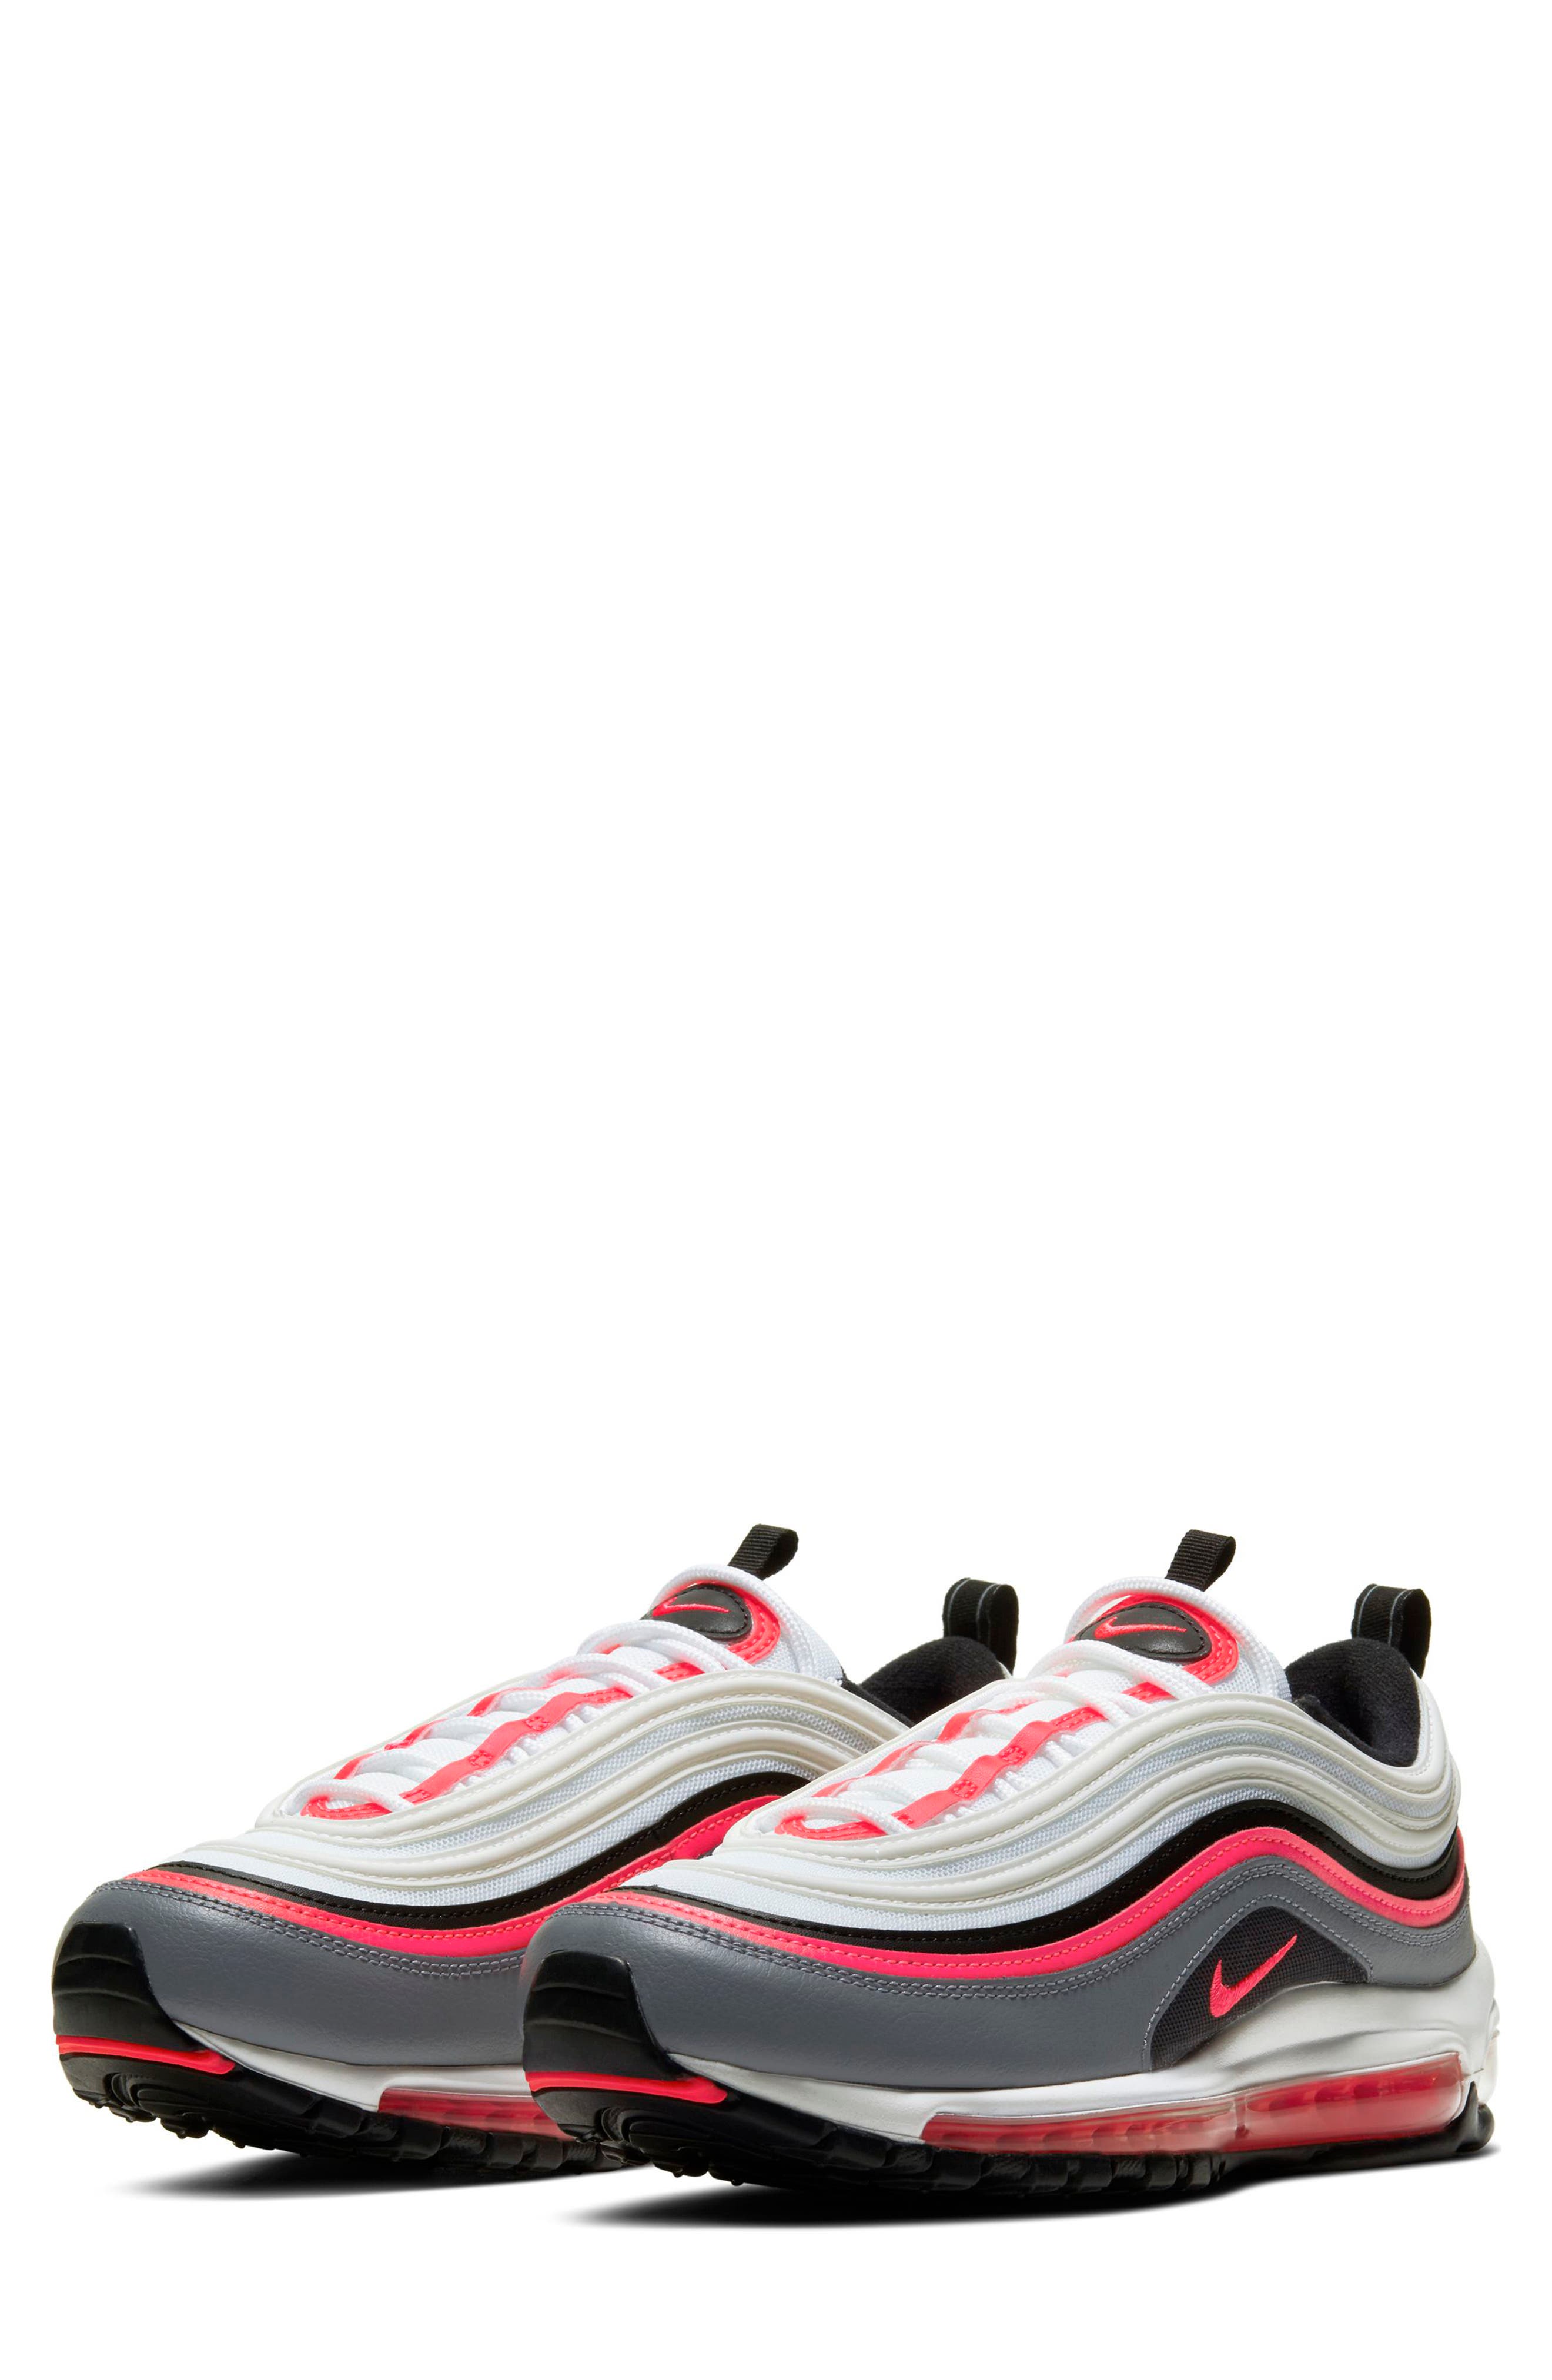 Men's Nike Air Max 97 Sneaker, Size 8 M 